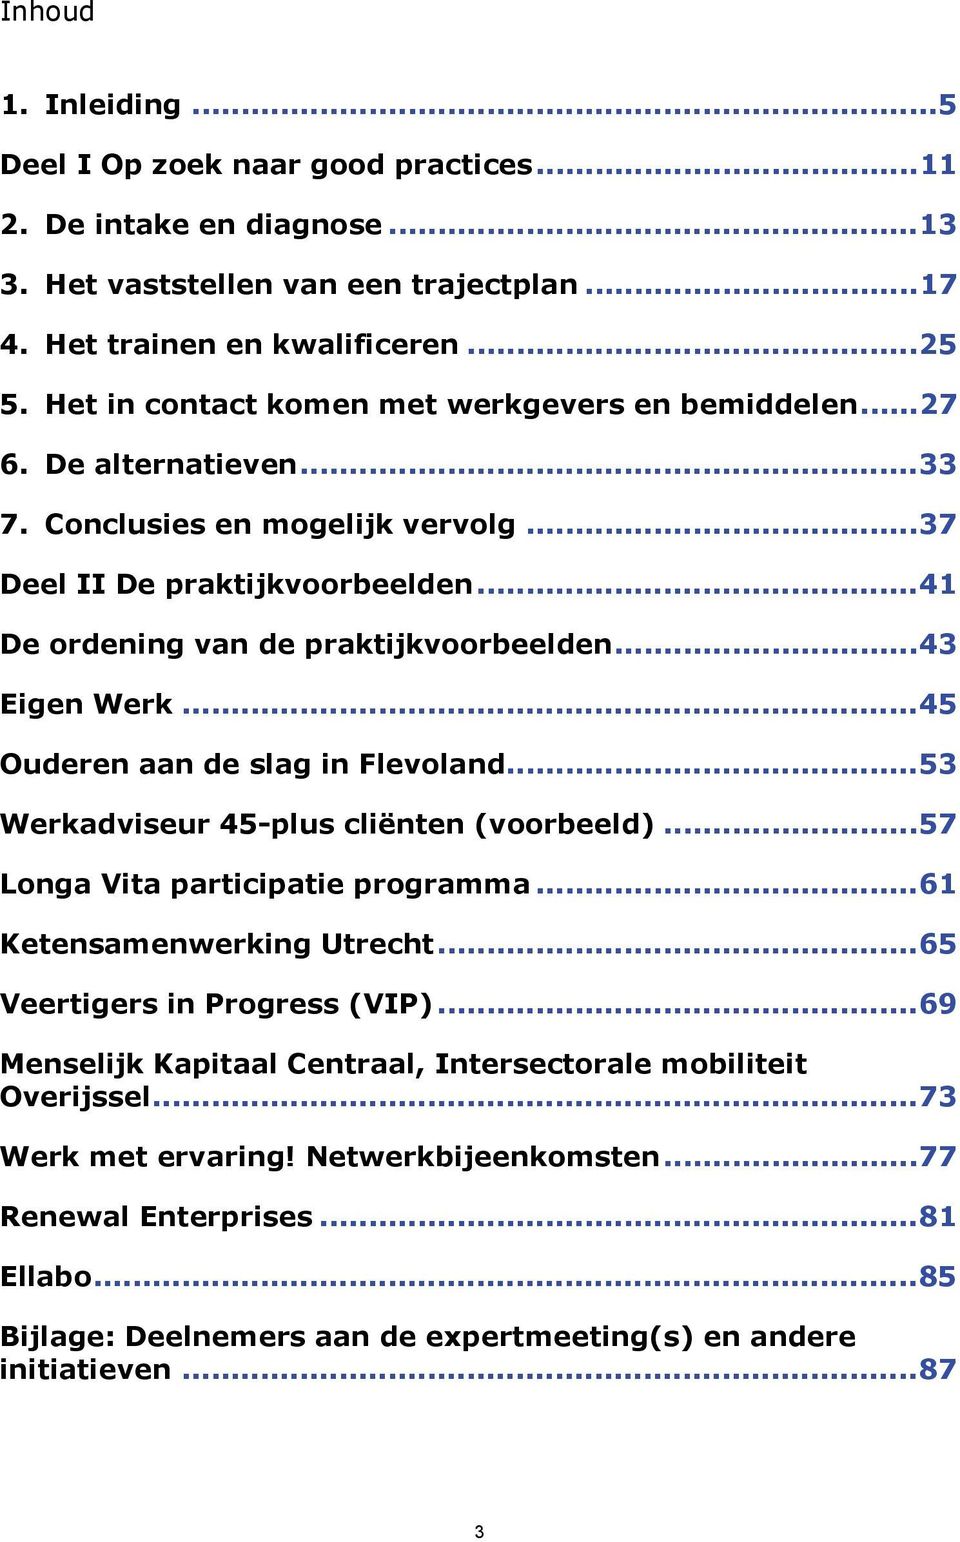 ..43 Eigen Werk...45 Ouderen aan de slag in Flevoland...53 Werkadviseur 45-plus cliënten (voorbeeld)...57 Longa Vita participatie programma...61 Ketensamenwerking Utrecht.